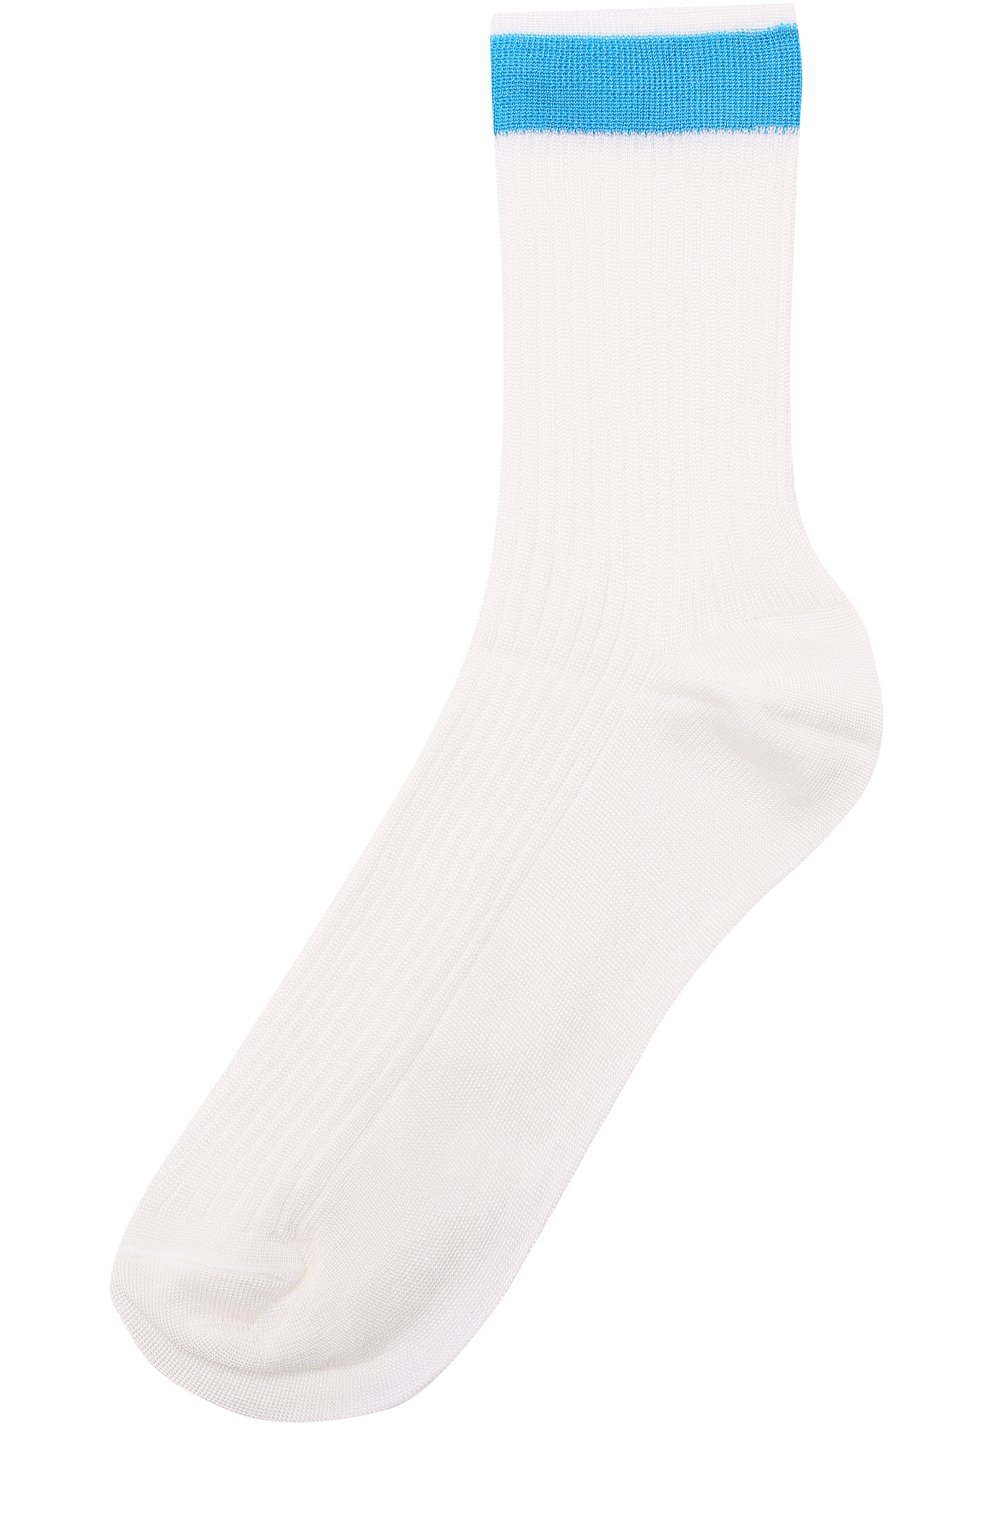 Женские шелковые носки с контрастной отделкой VALENTINO голубого цвета, арт. PB3KI01D/3TD | Фото 1 (Материал внешний: Шелк, Синтетический материал)